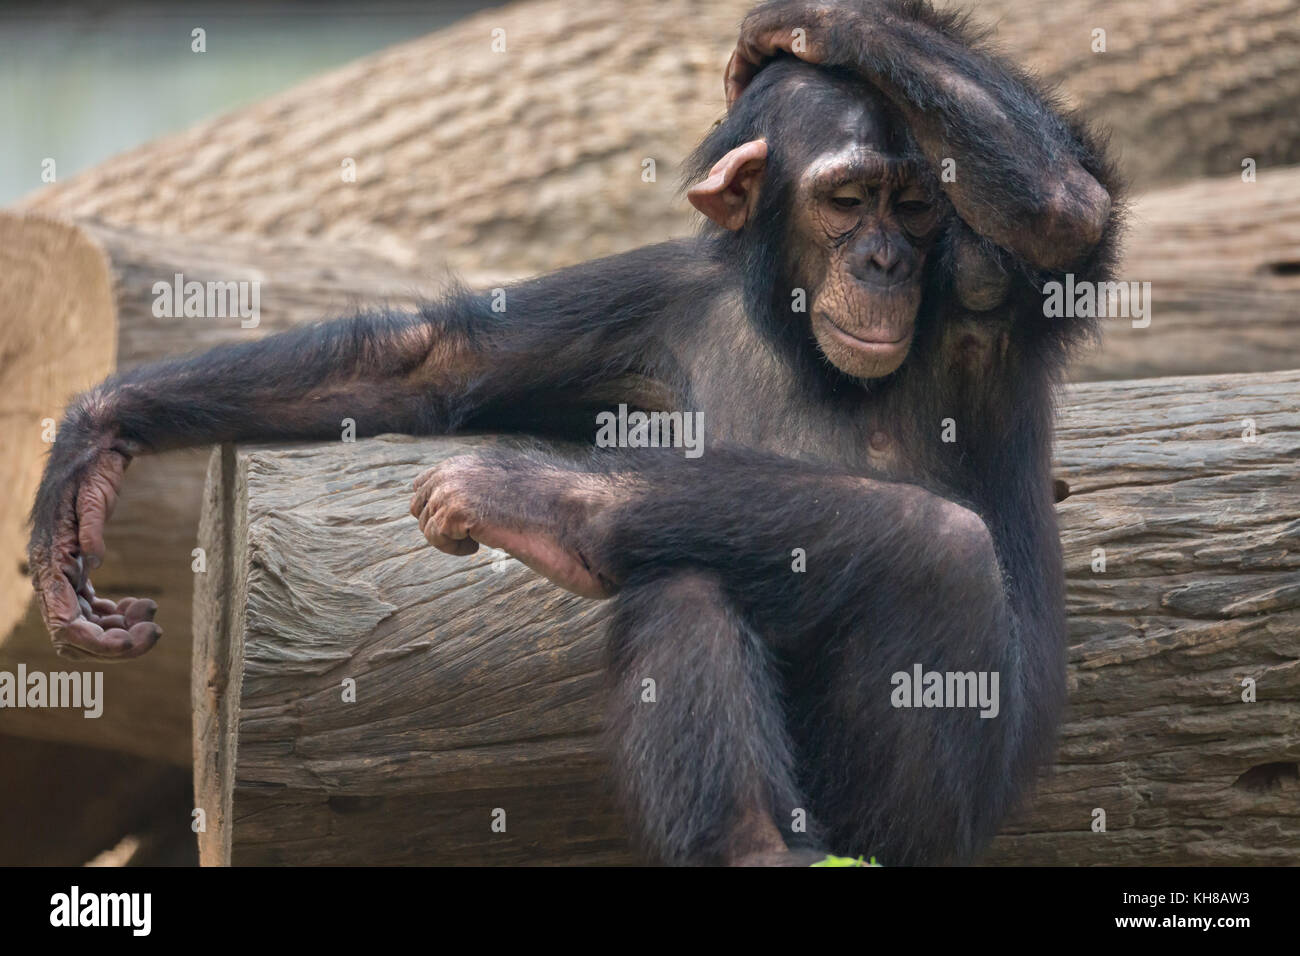 El chimpancé con una expresión de abatimiento. los chimpancés son primates que presentan rasgos conductuales cercano al de los seres humanos. Foto de stock